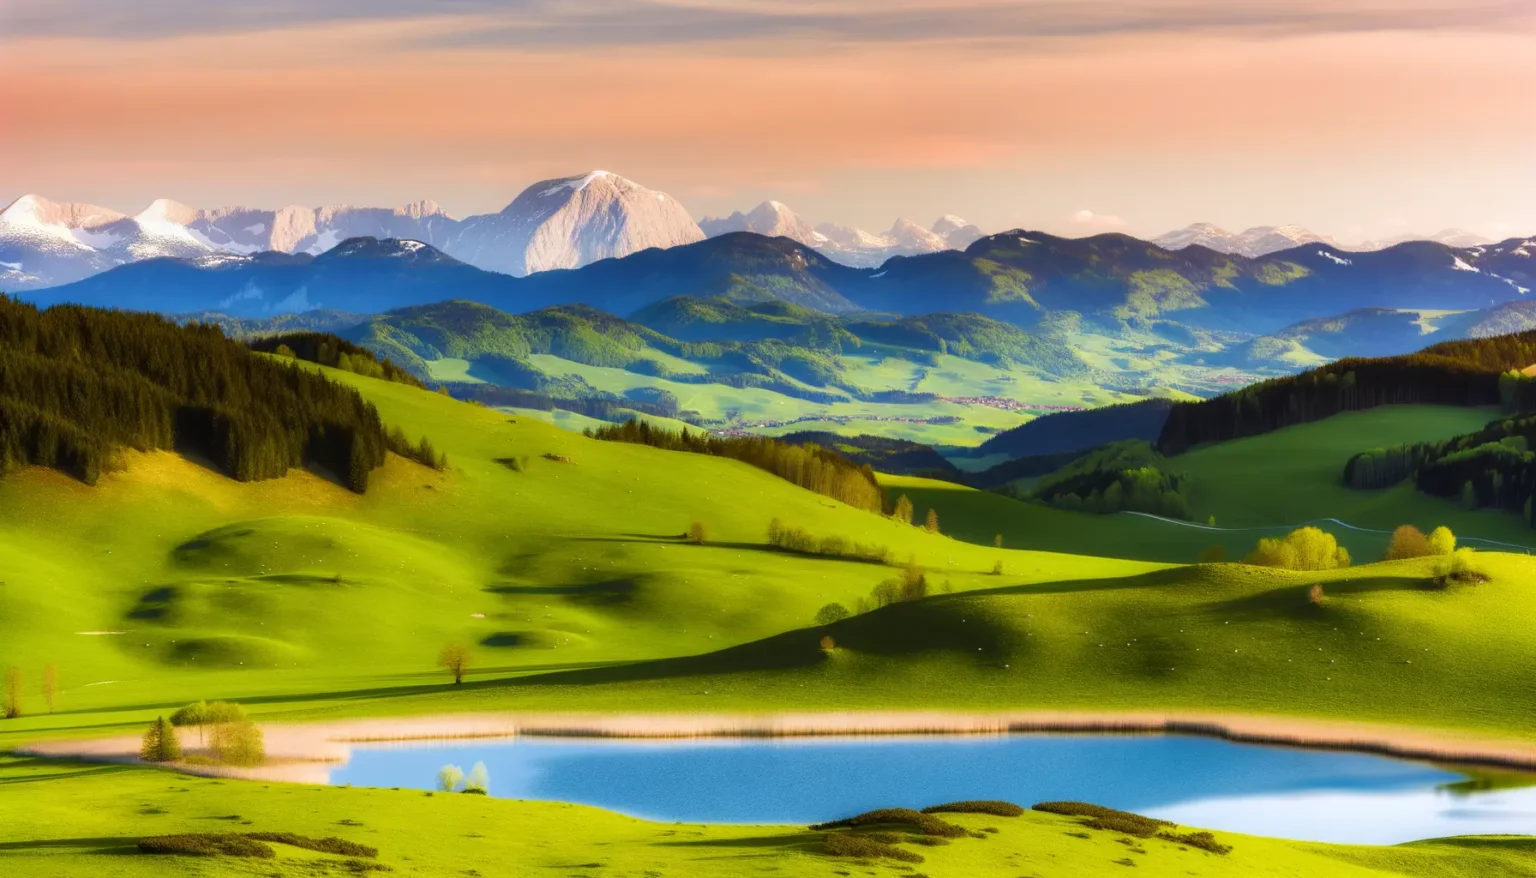 Panoramablick auf eine malerische Landschaft bei Sonnenuntergang mit leuchtend grünen Hügeln, einem kleinen See im Vordergrund, bewaldeten Bereichen und schneebedeckten Bergen im Hintergrund unter einem pastellfarbenen Himmel.